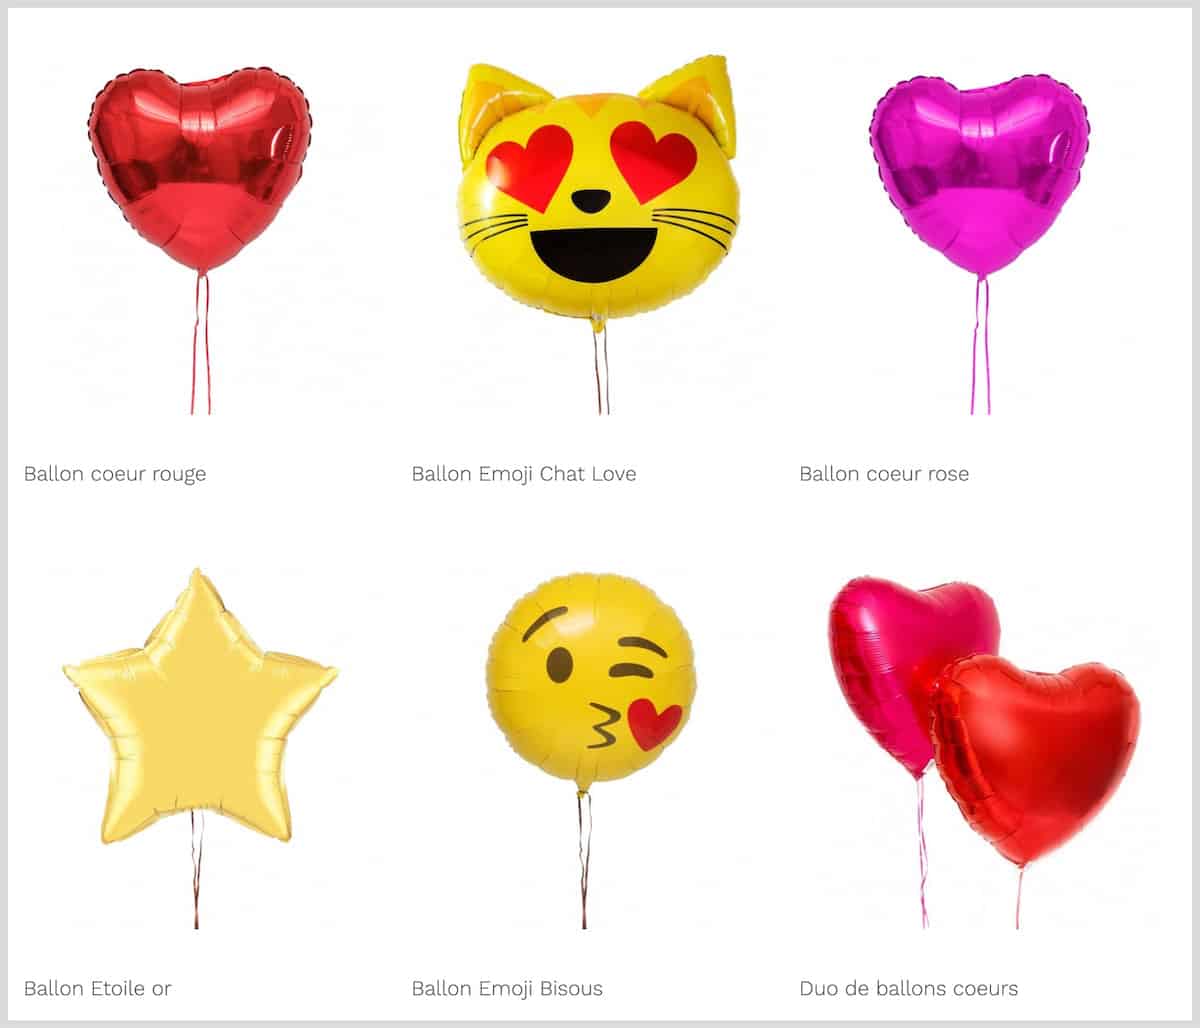 Ballons anniversaire 1 ans gonflables air ou hélium - Livraison express  partout en France